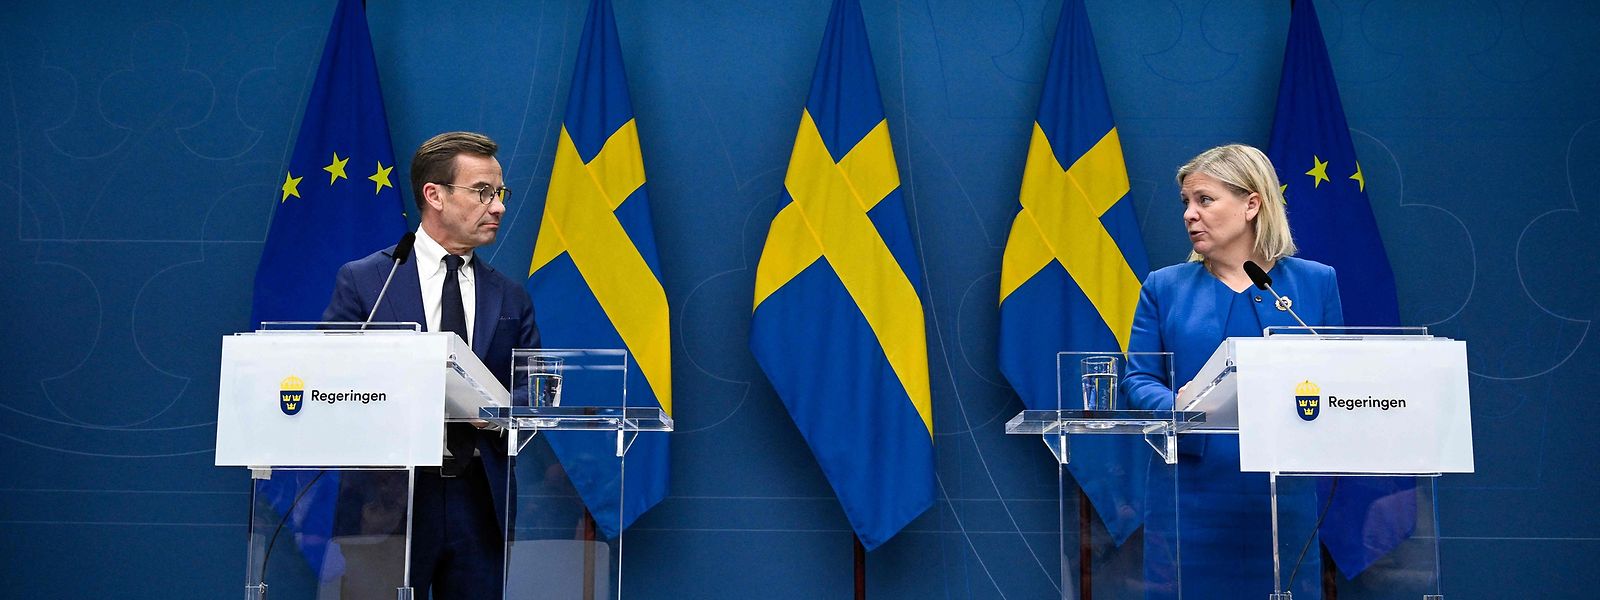 Die schwedische Ministerpräsidentin Magdalena Andersson verkündet die Entscheidung zur Bewerbung um die Nato-Mitgliedschaft gemeinsam mit dem Chef der bürgerlichen Oppositionspartei Moderaterna, Ulf Kristersson.